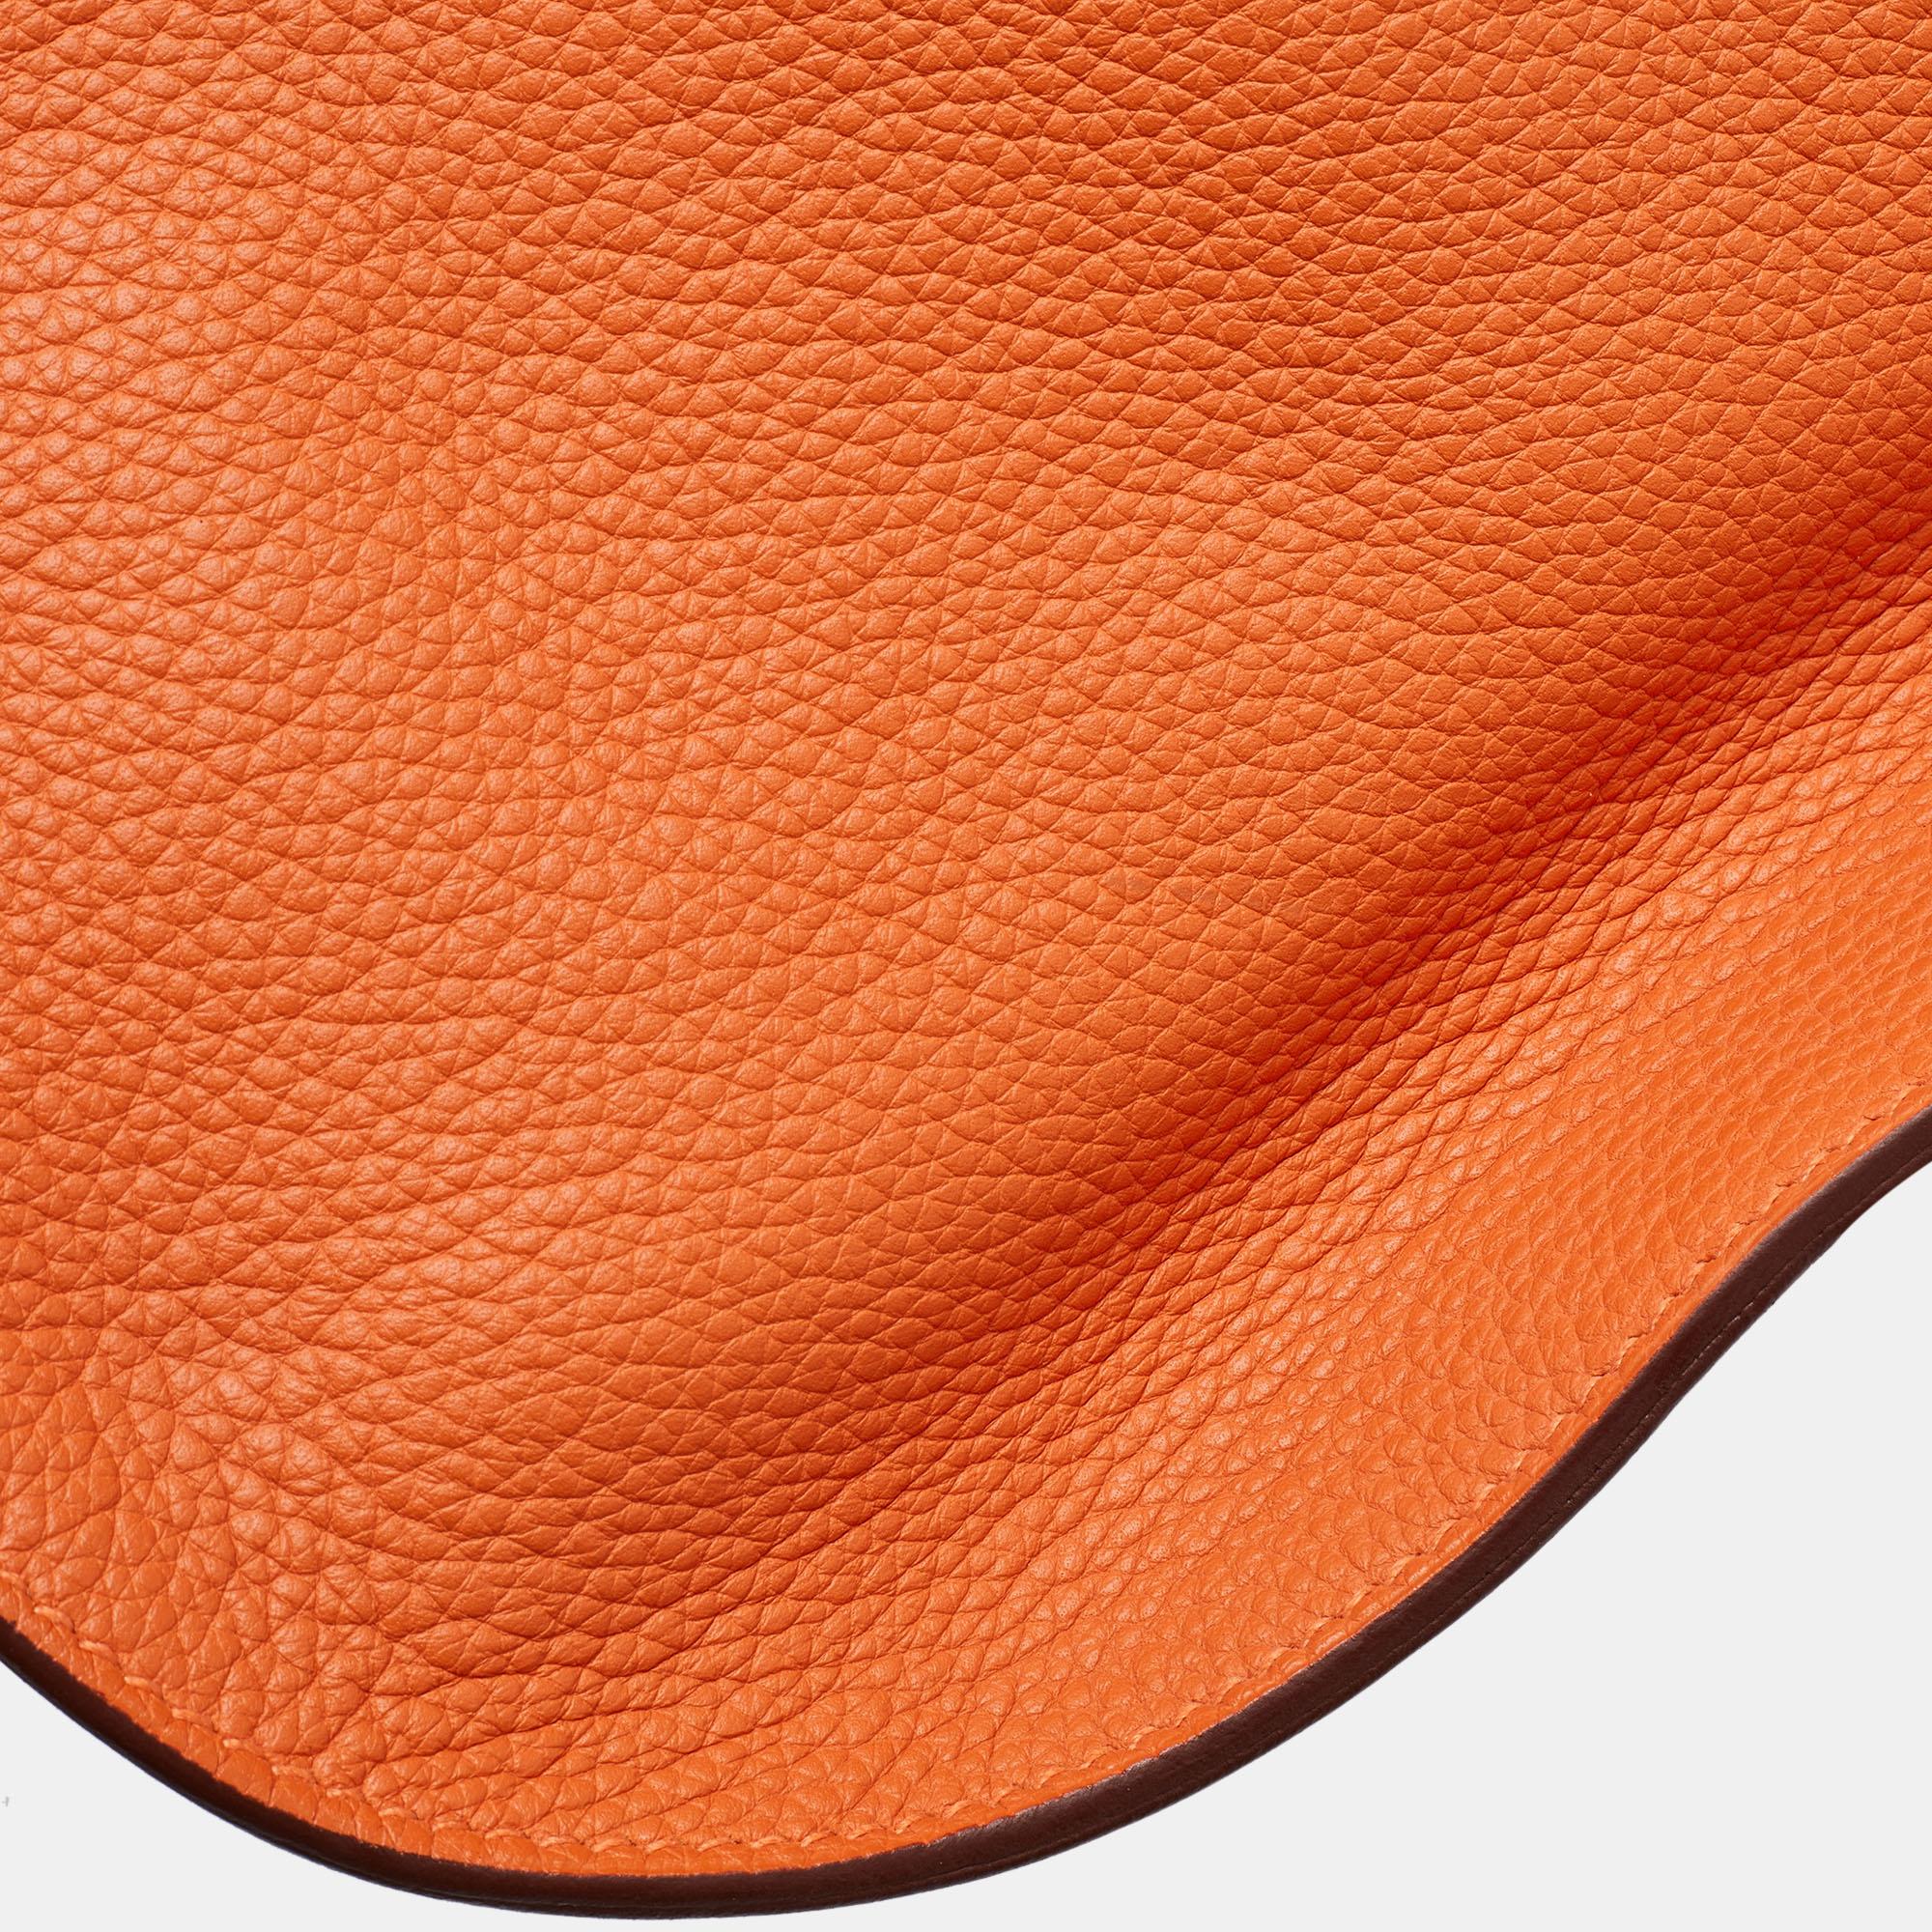 Hermès Orange Togo Leather Palladium Finish Jypsiere 37 Bag For Sale 11